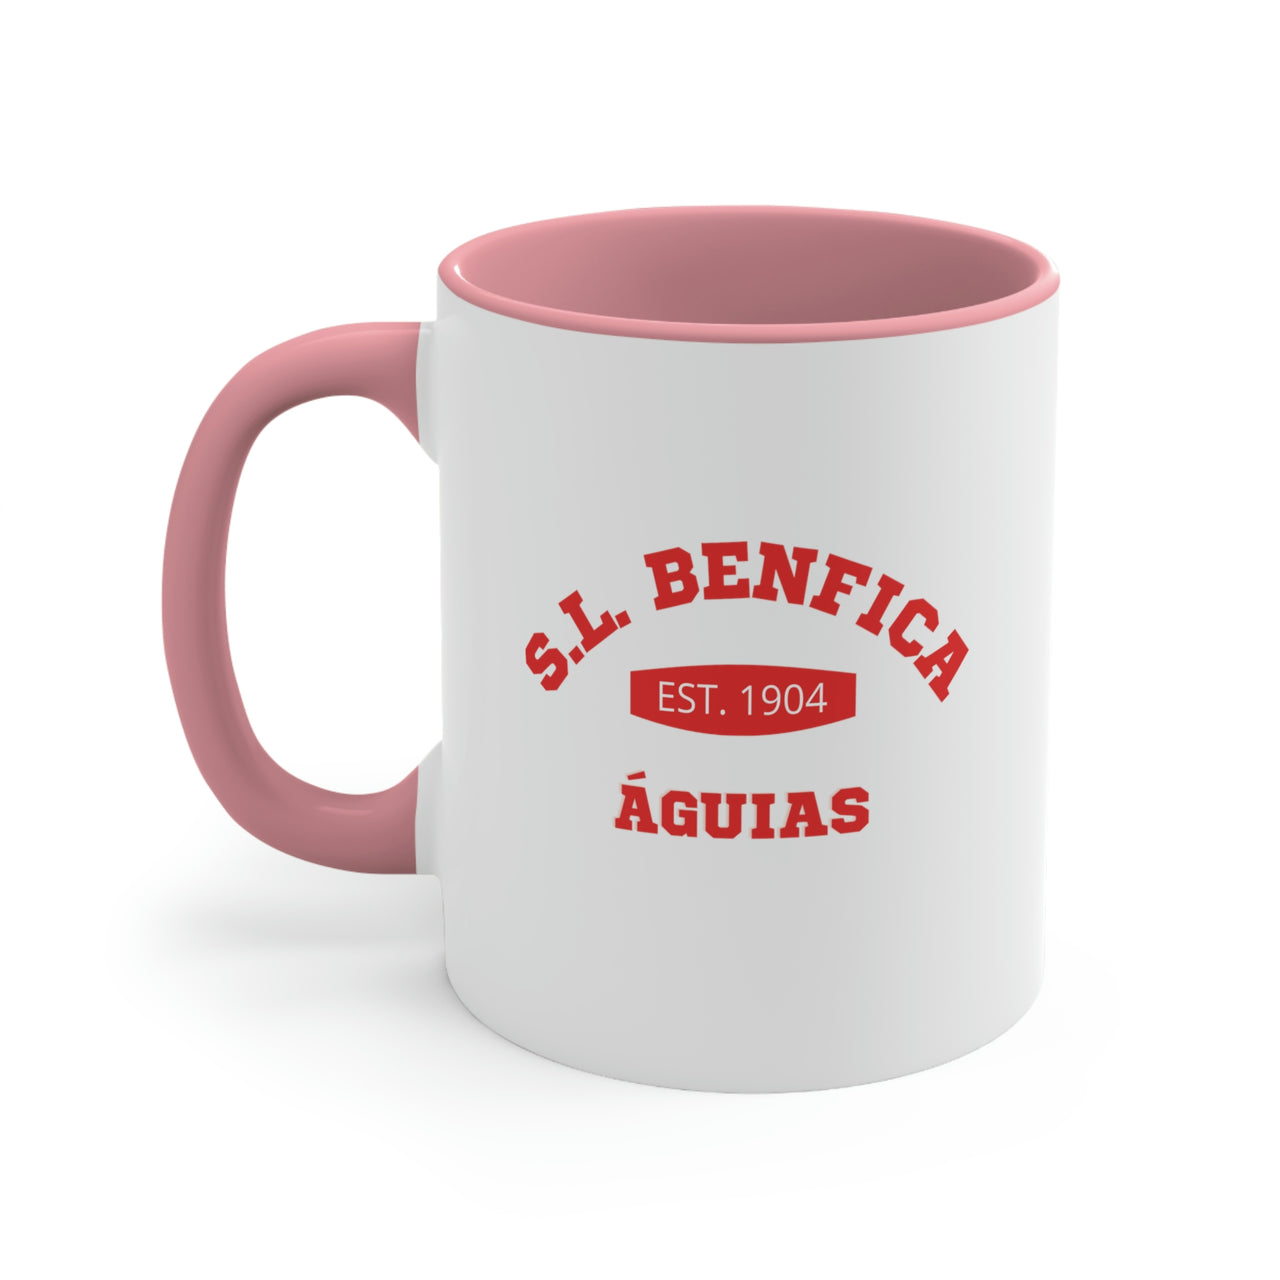 Benfica Coffee Mug, 11oz